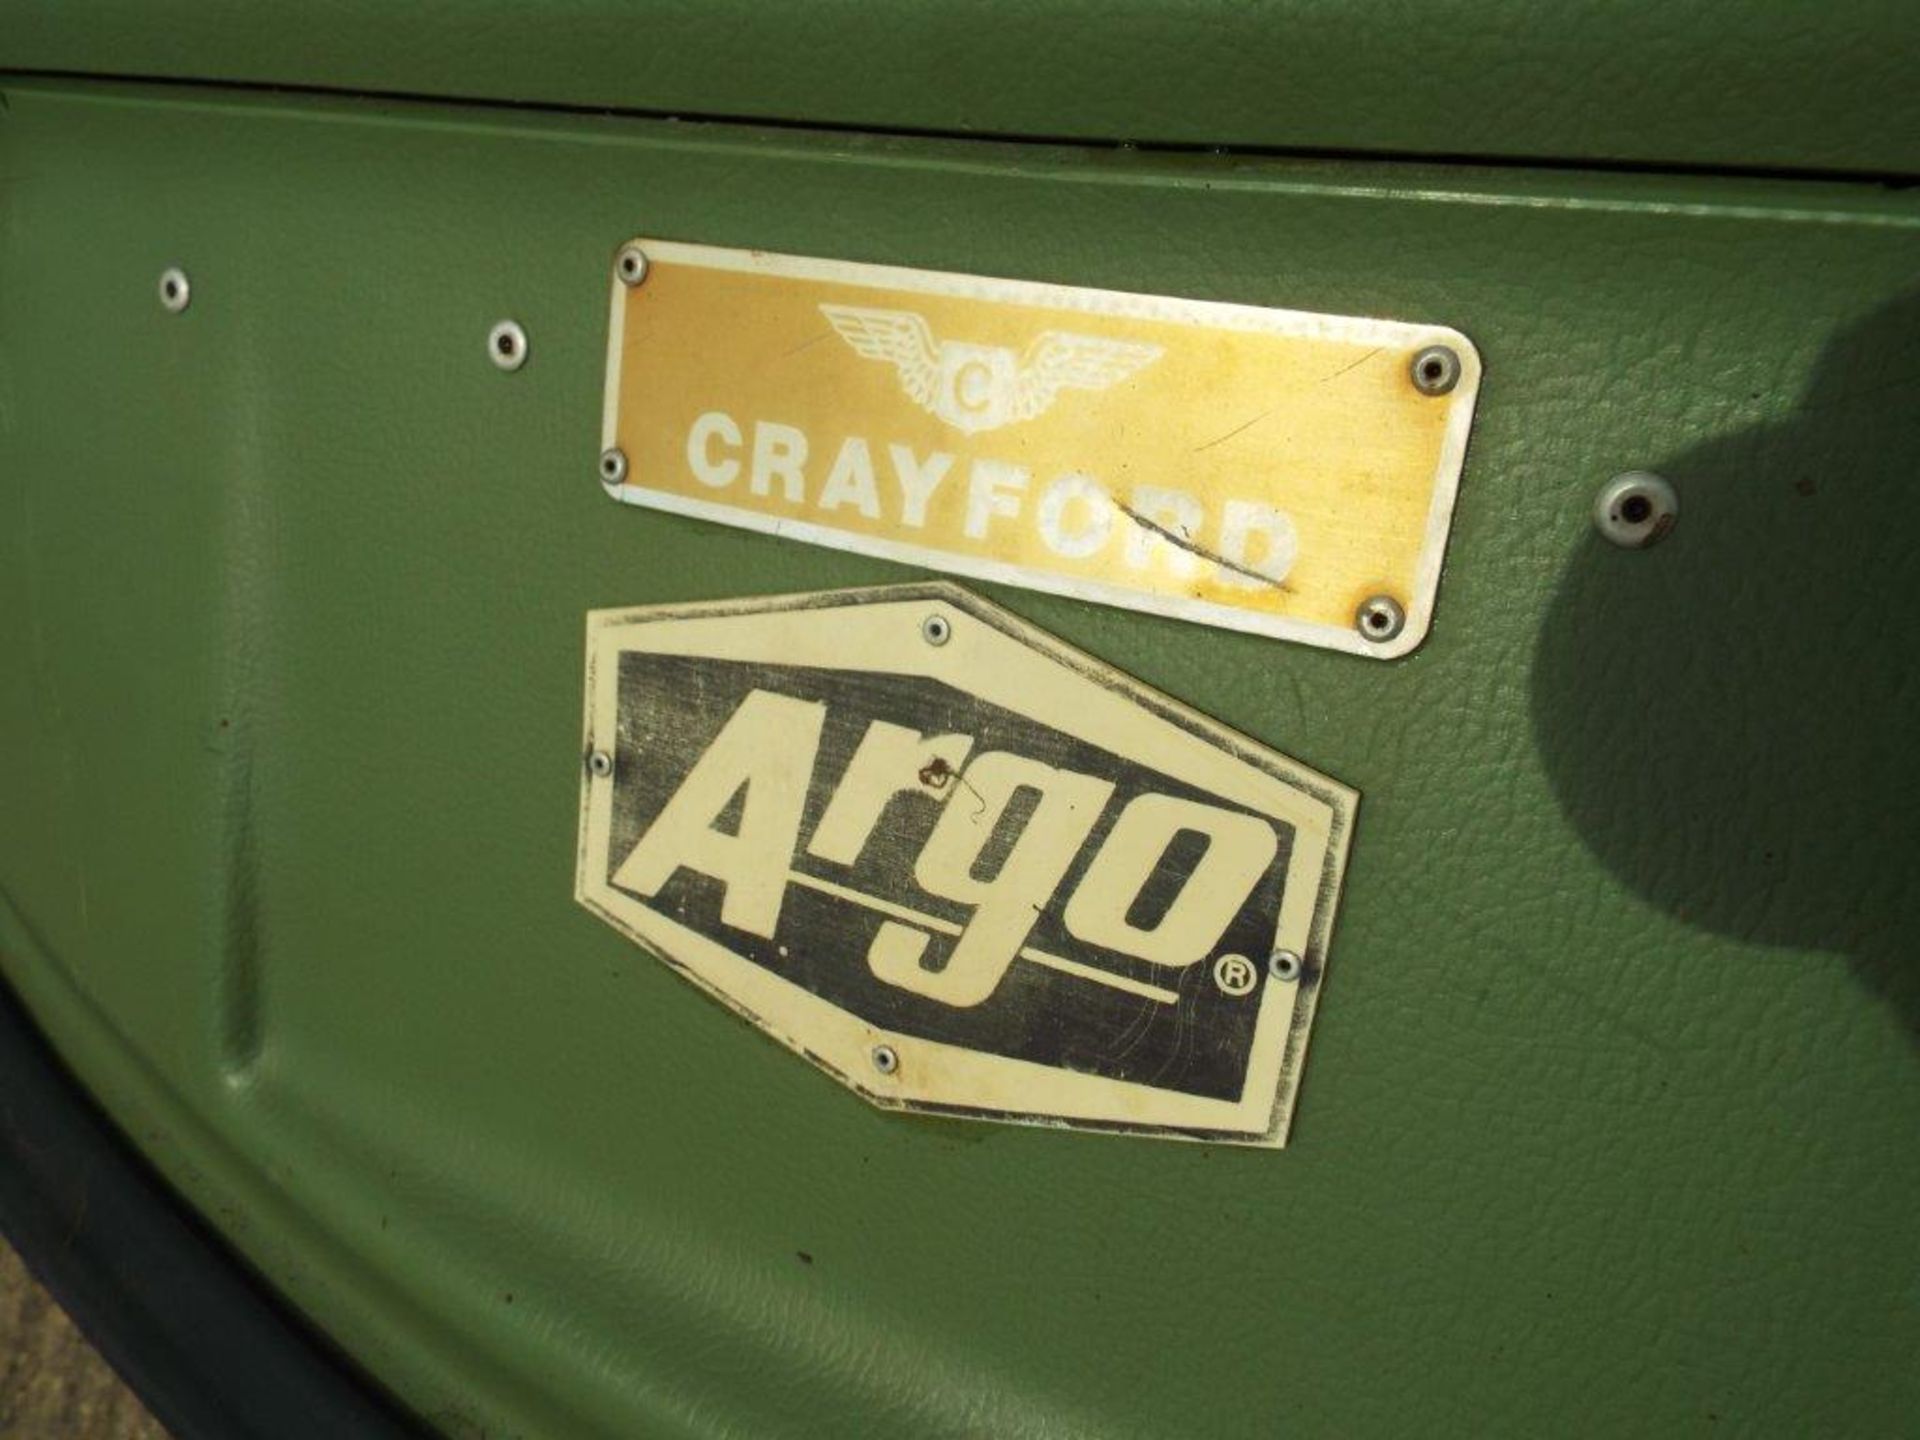 Crayford Argocat 8x8 Magnum Amphibious ATV - Image 19 of 27